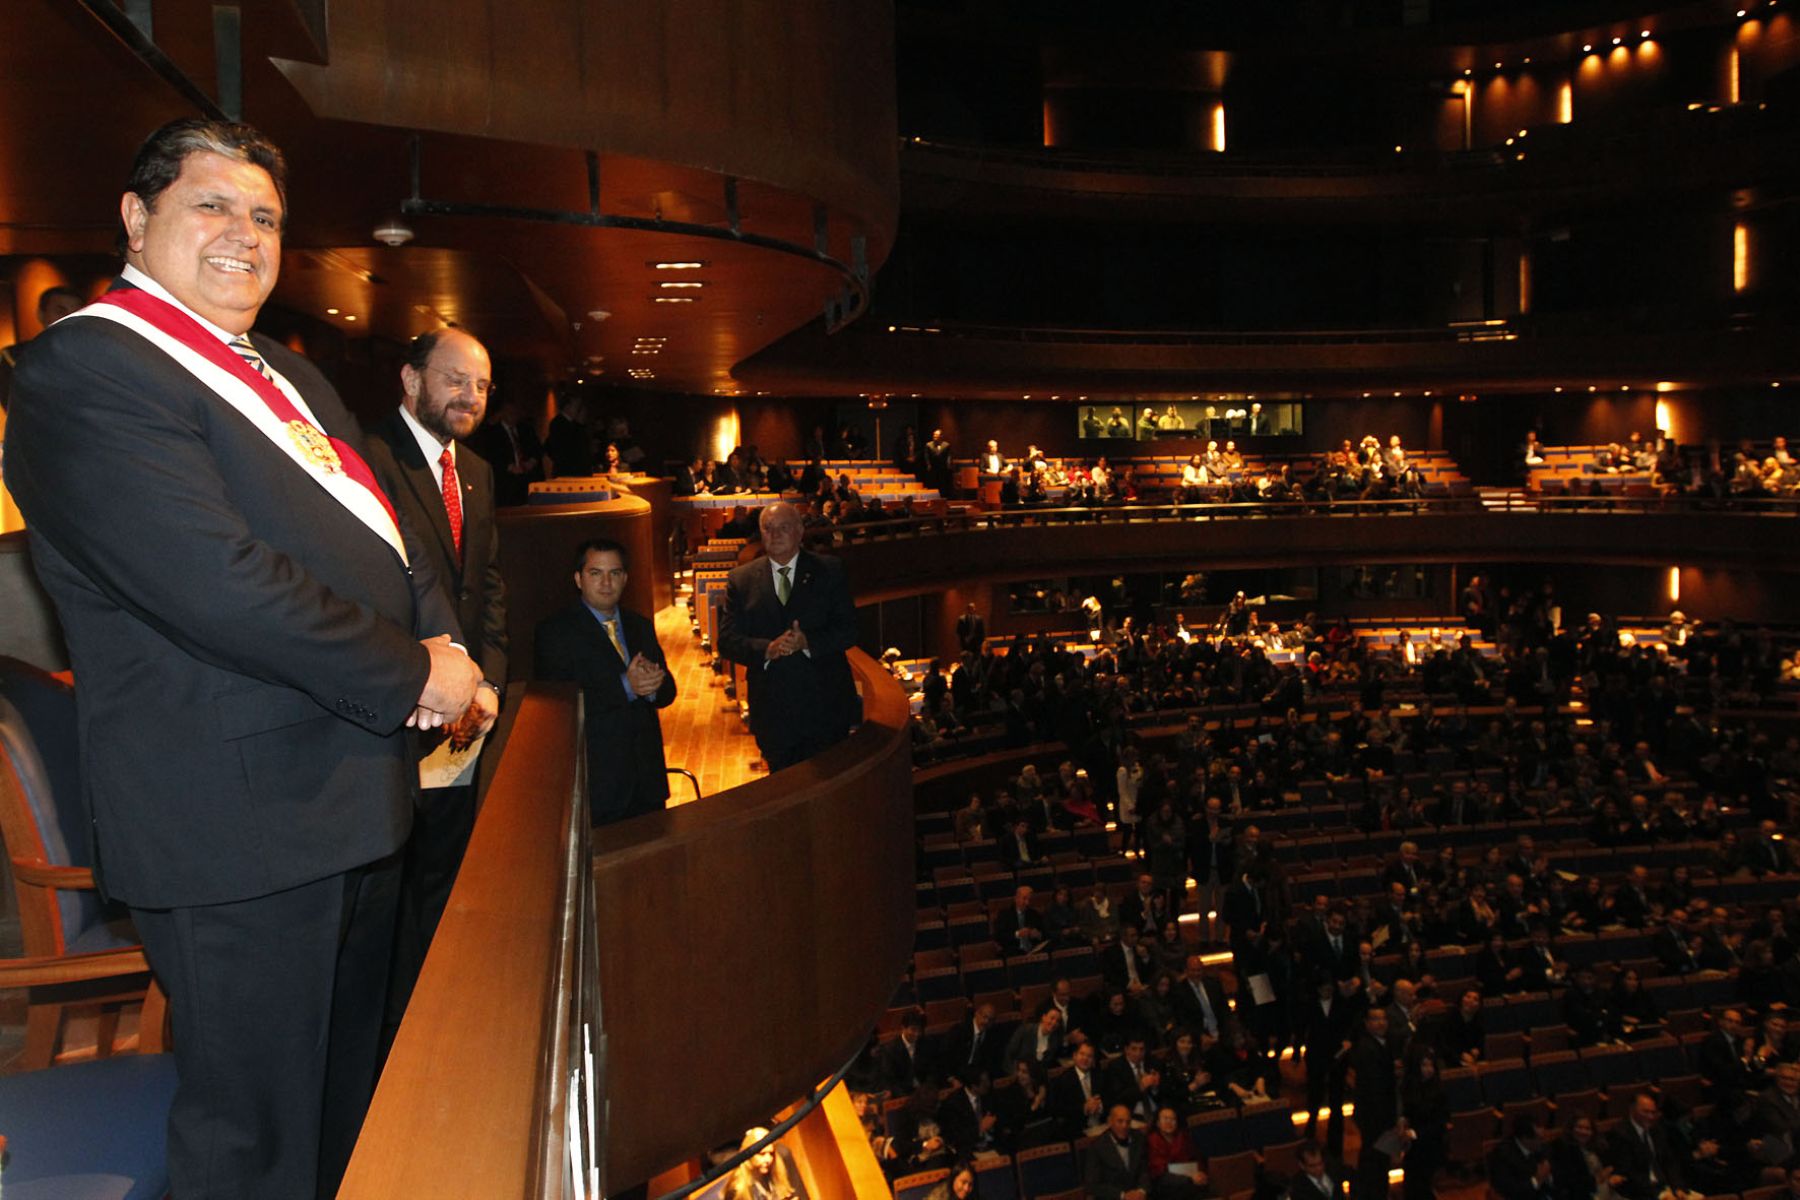 Jefe del Estado asiste a inauguración del Gran Teatro Nacional, acompañado de los cancilleres de Chile, Alfredo Moreno, y de Colombia, María Holguín.